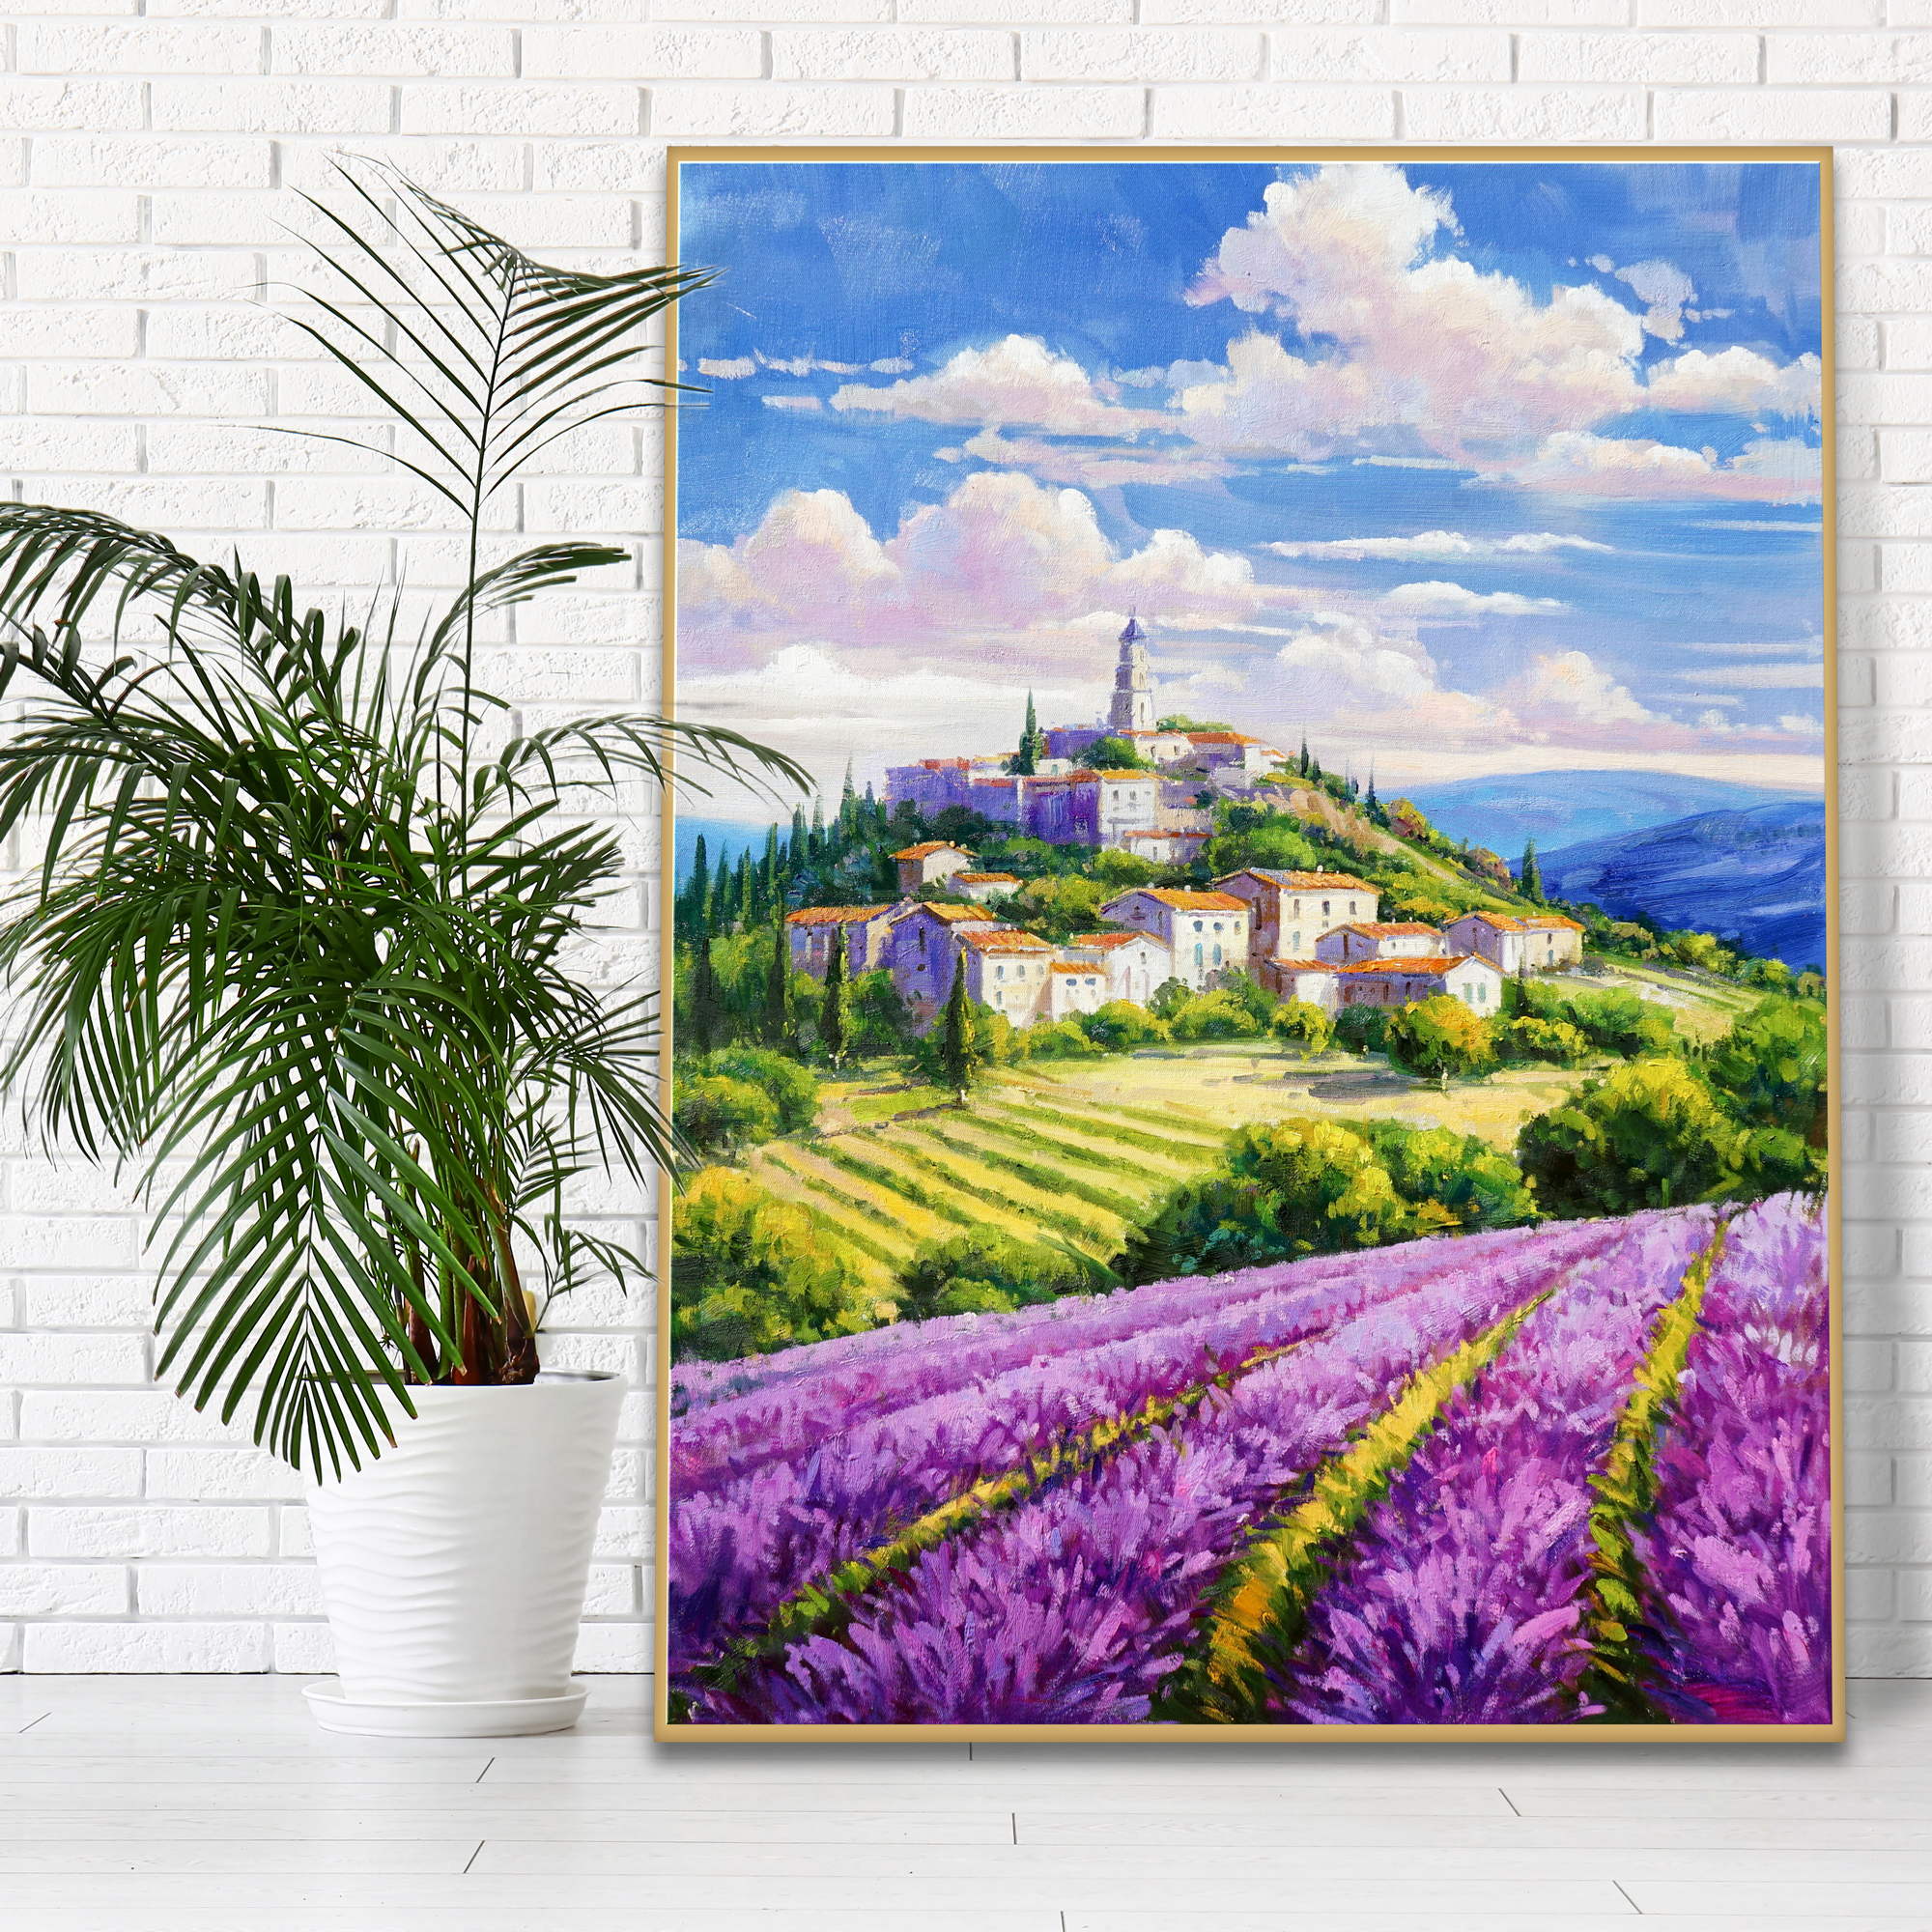 Dipinto di un paesaggio con campi di lavanda e antico borgo sulla collina